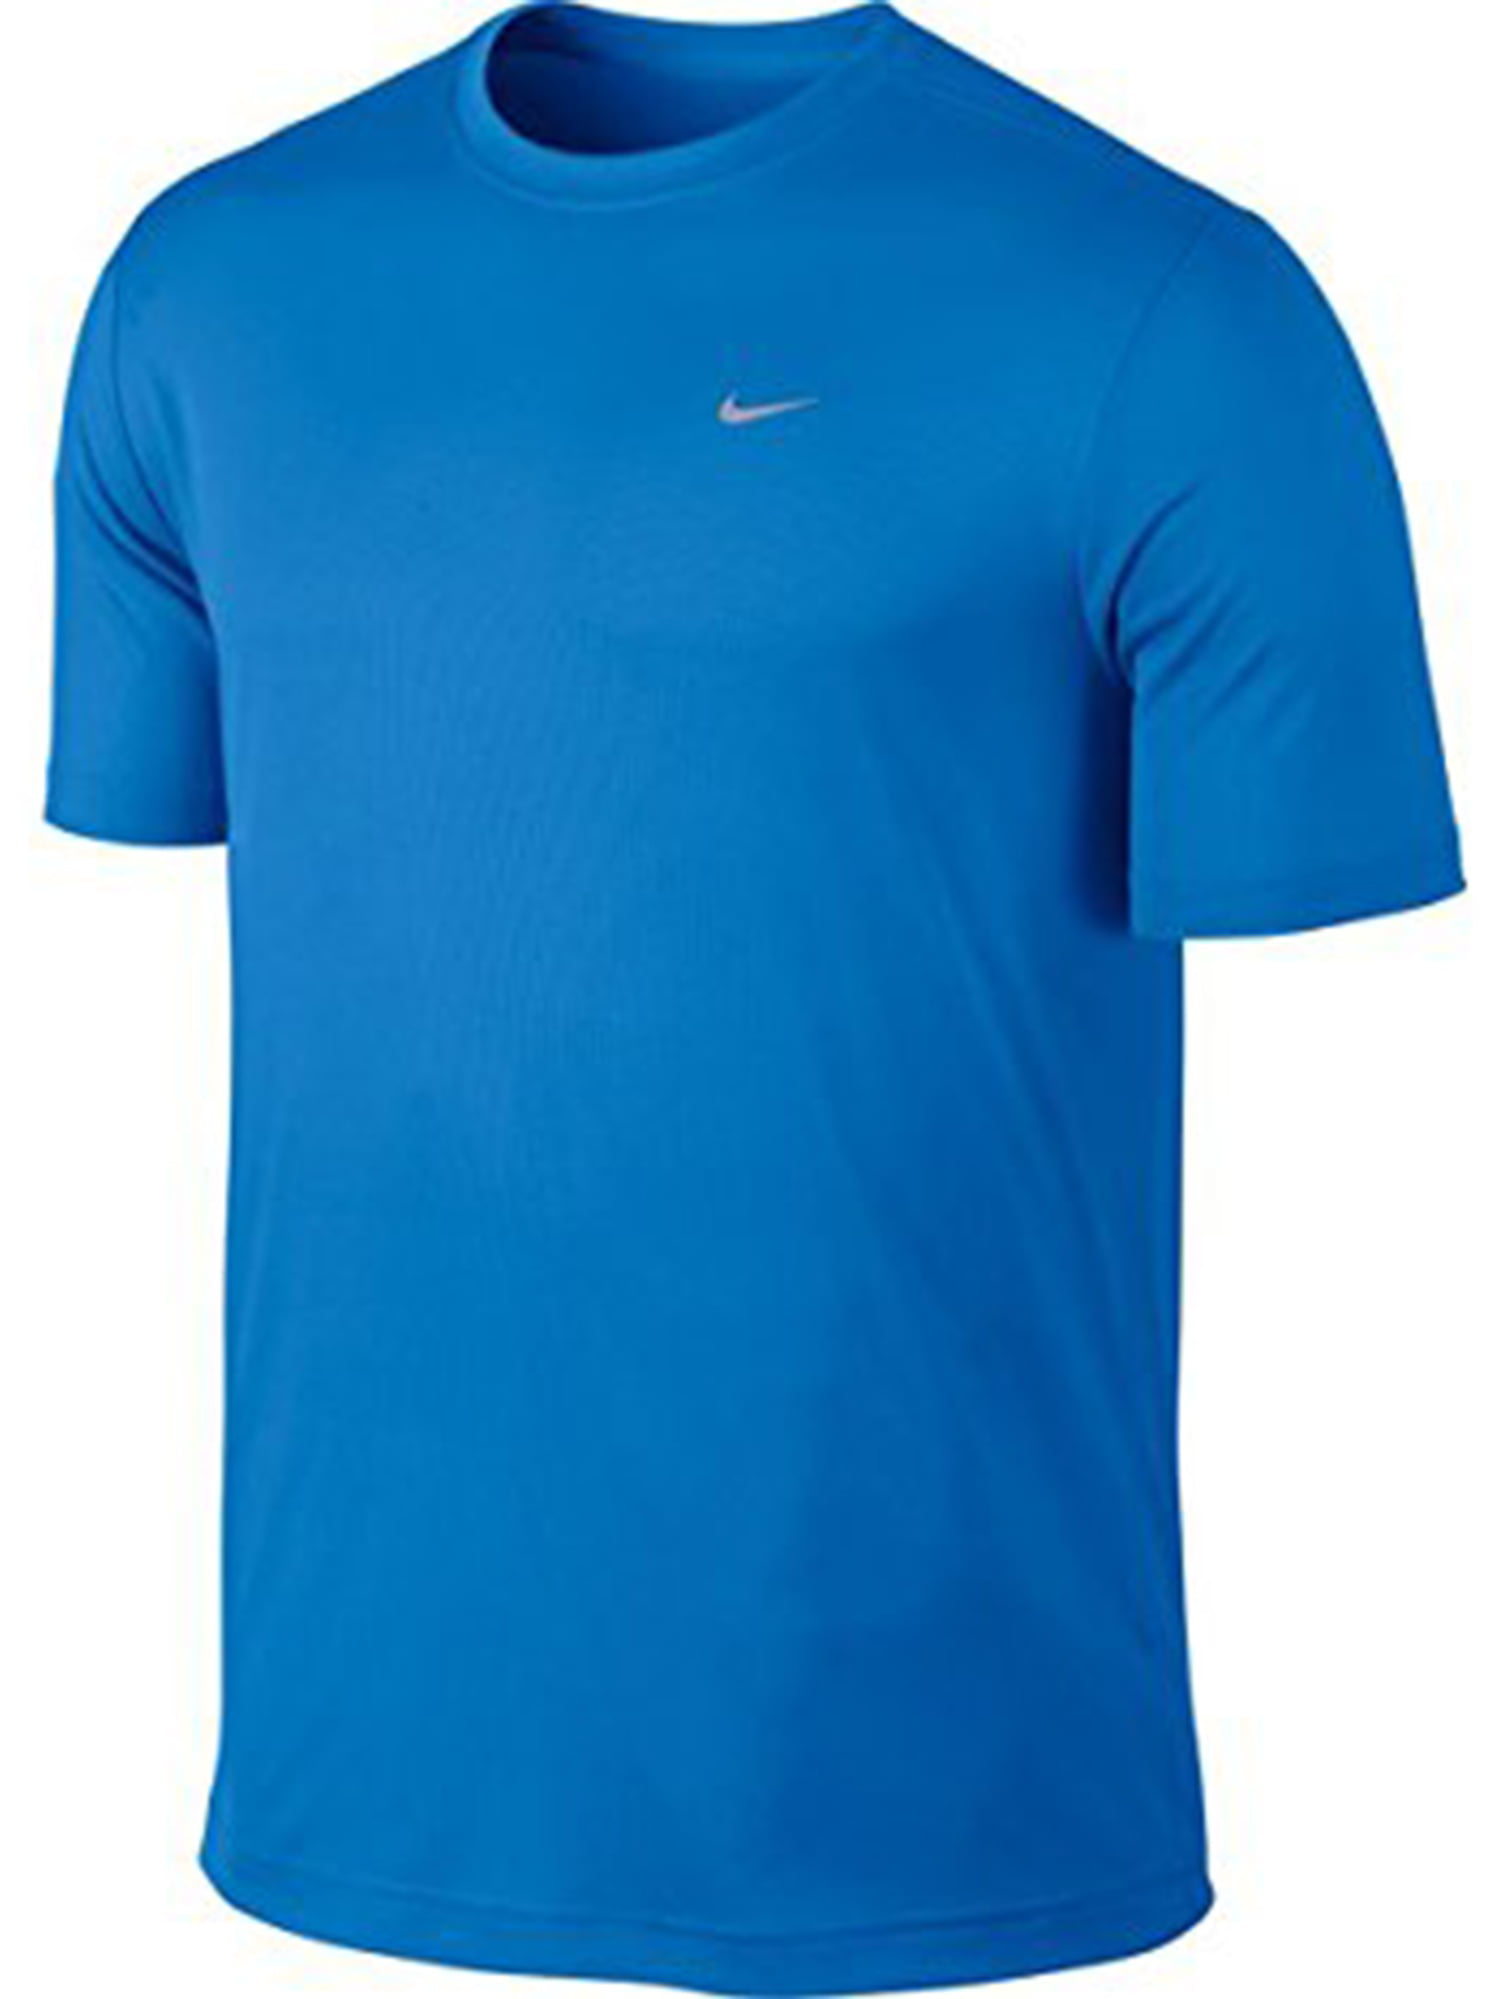 Nike - Men's Nike Challenger SS T Shirt - Walmart.com - Walmart.com